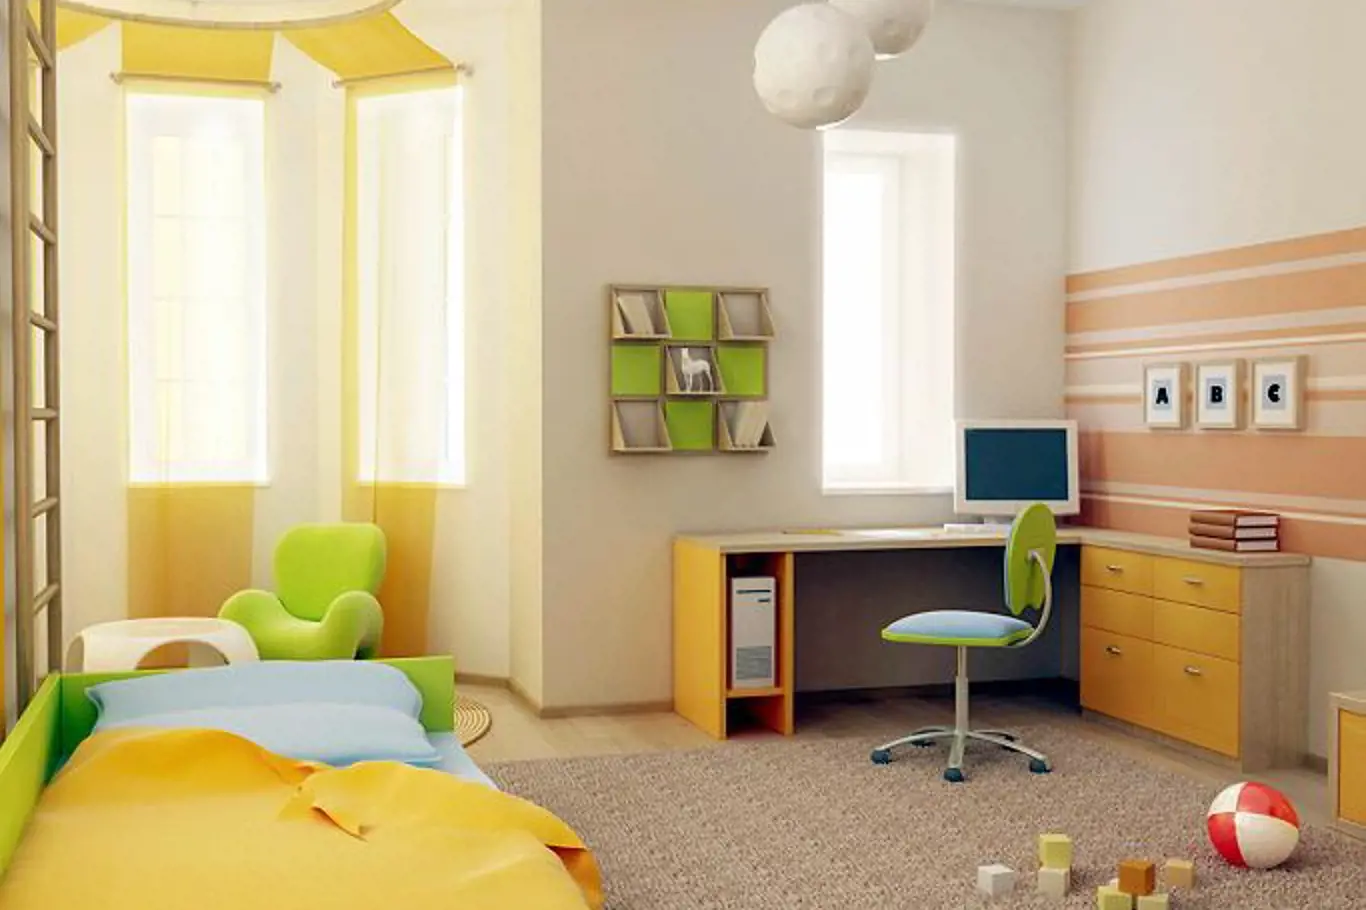 Pastelové barvy jsou pro tmavý byt ideální. Kombinace žluté a světle zelené bude působit svěže.